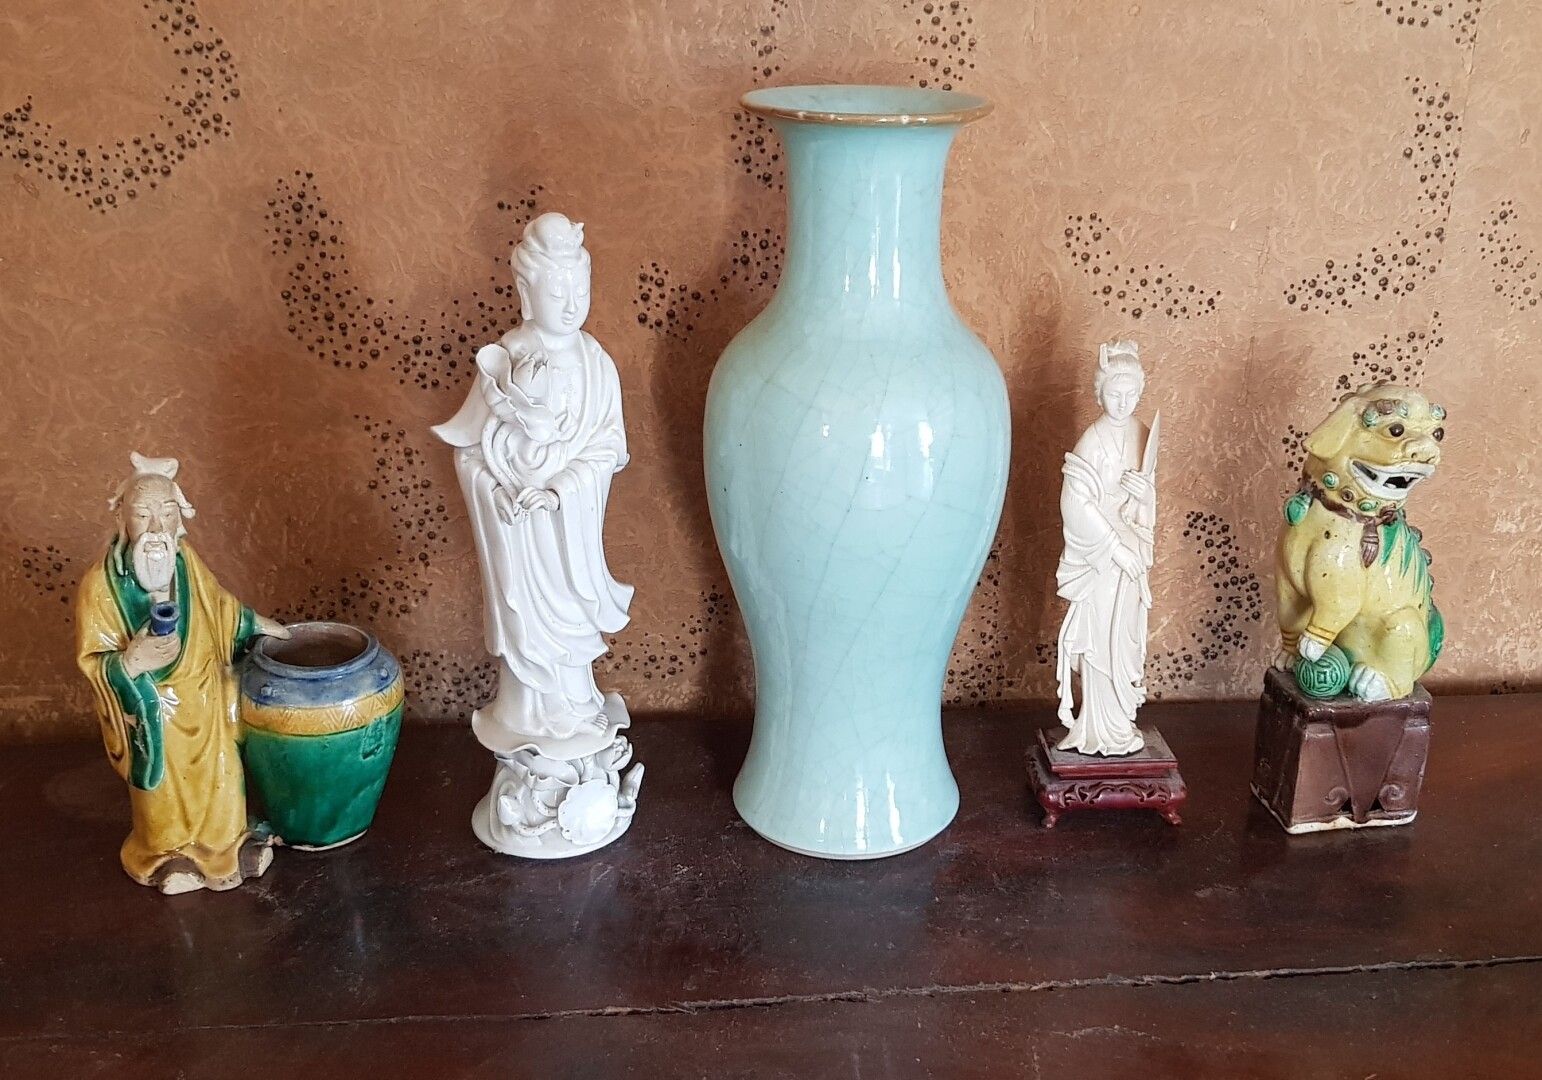 Null 亚洲

一批瓷器包括:

青瓷花瓶

白瓷Qwanine

靠近罐子的鼠尾草

釉上彩炻器霍狗

一个拿着象牙扇子的女人，19世纪（事故和缺失）。

&hellip;